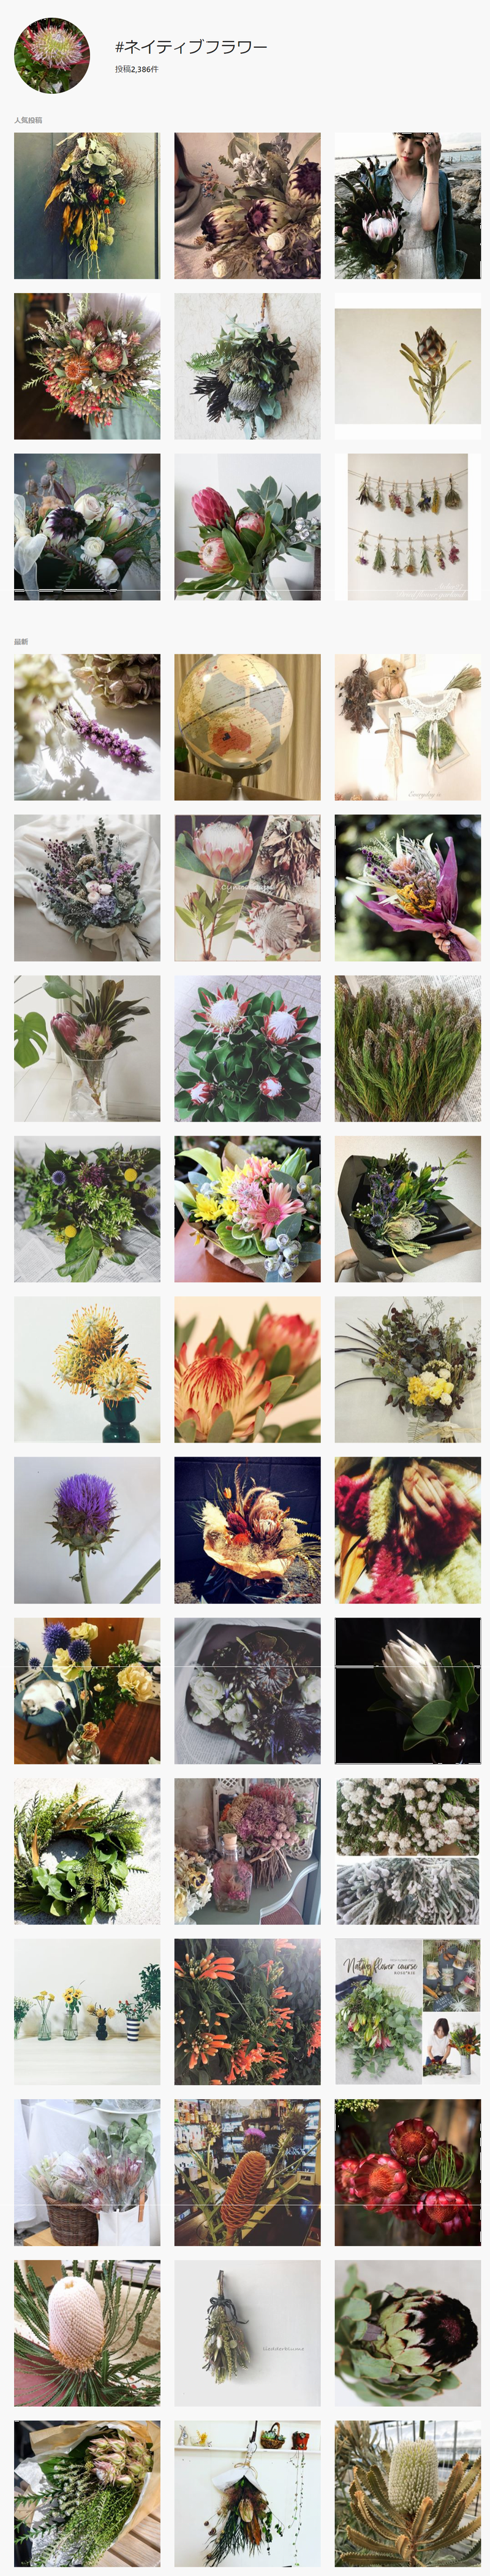 花の名前 わかりますか お花屋さんでよく見る花9選 ネイティブフラワー編 切花情報サイト ハナラボノート